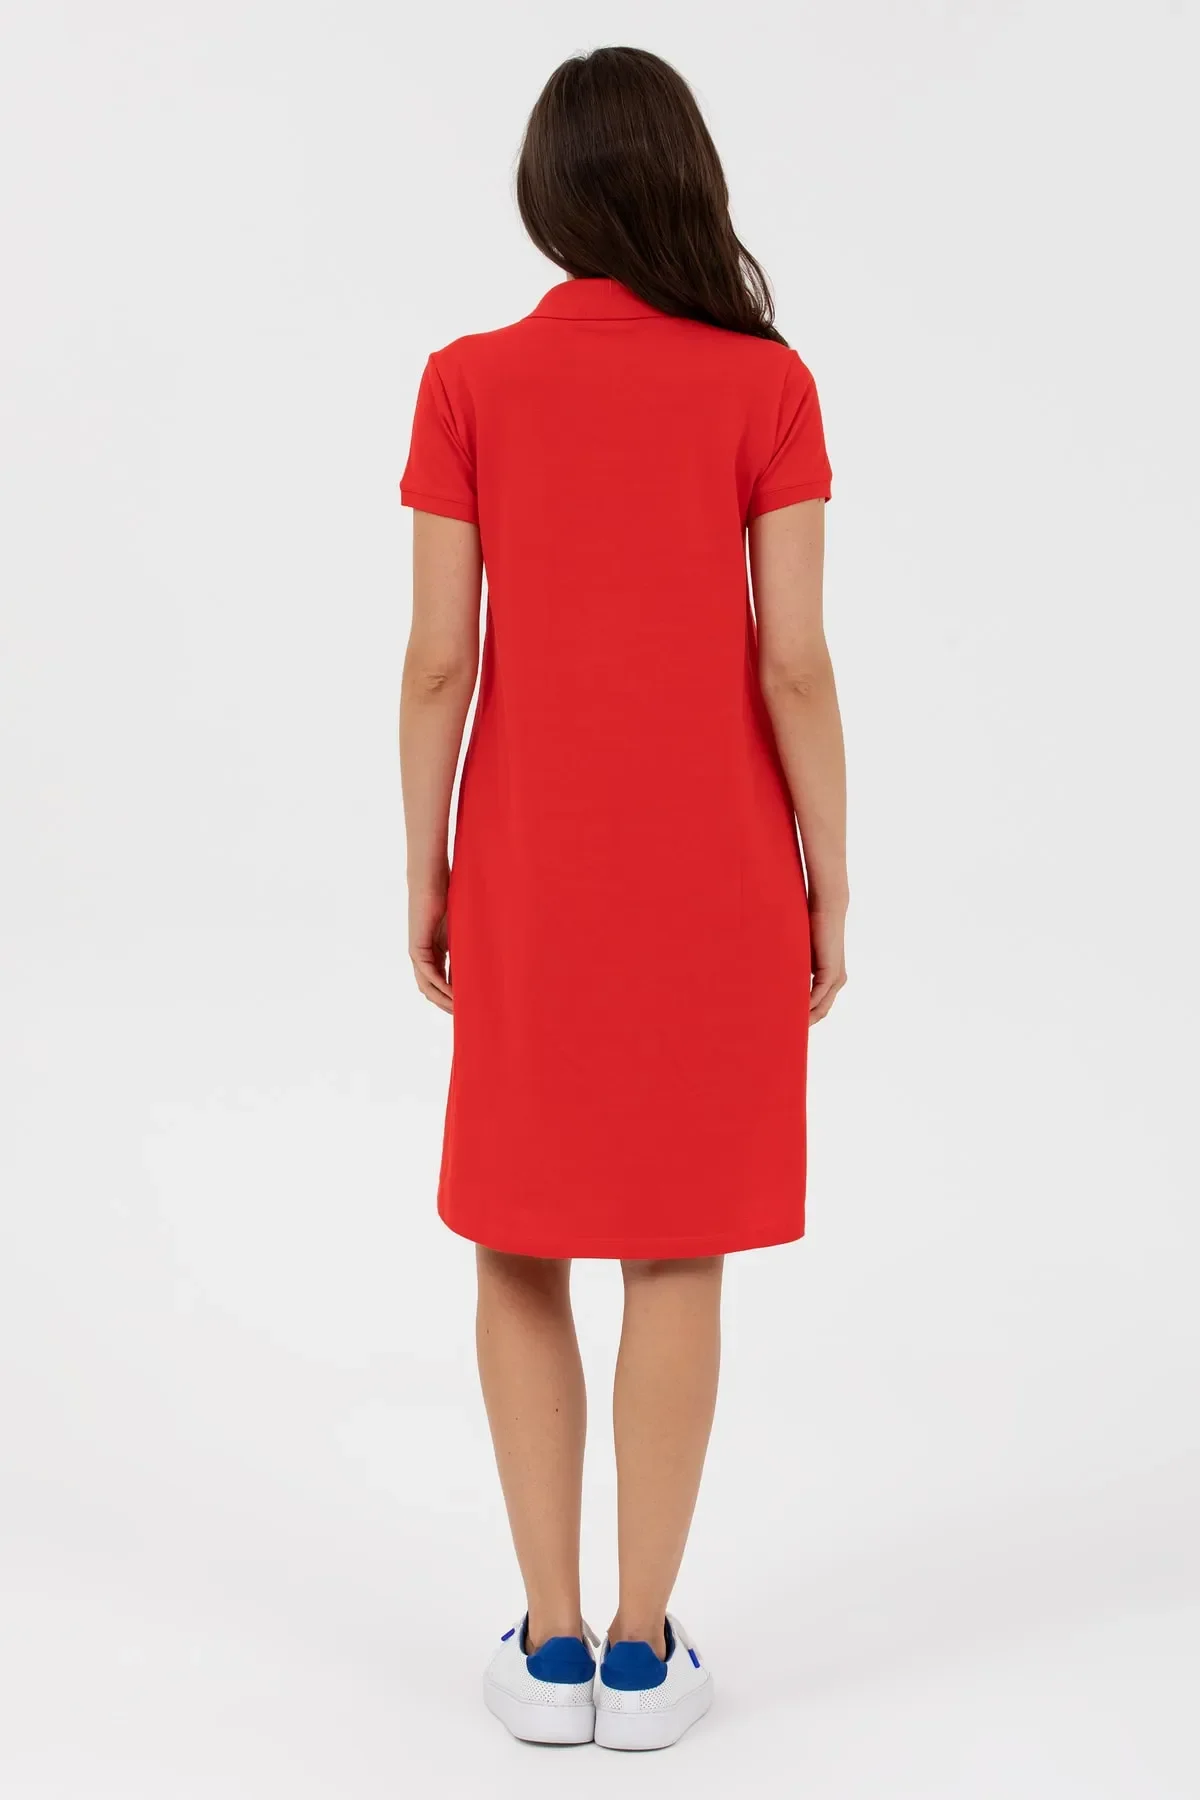 Kadın Polo Yaka Örme Elbise-Kırmızı - 4